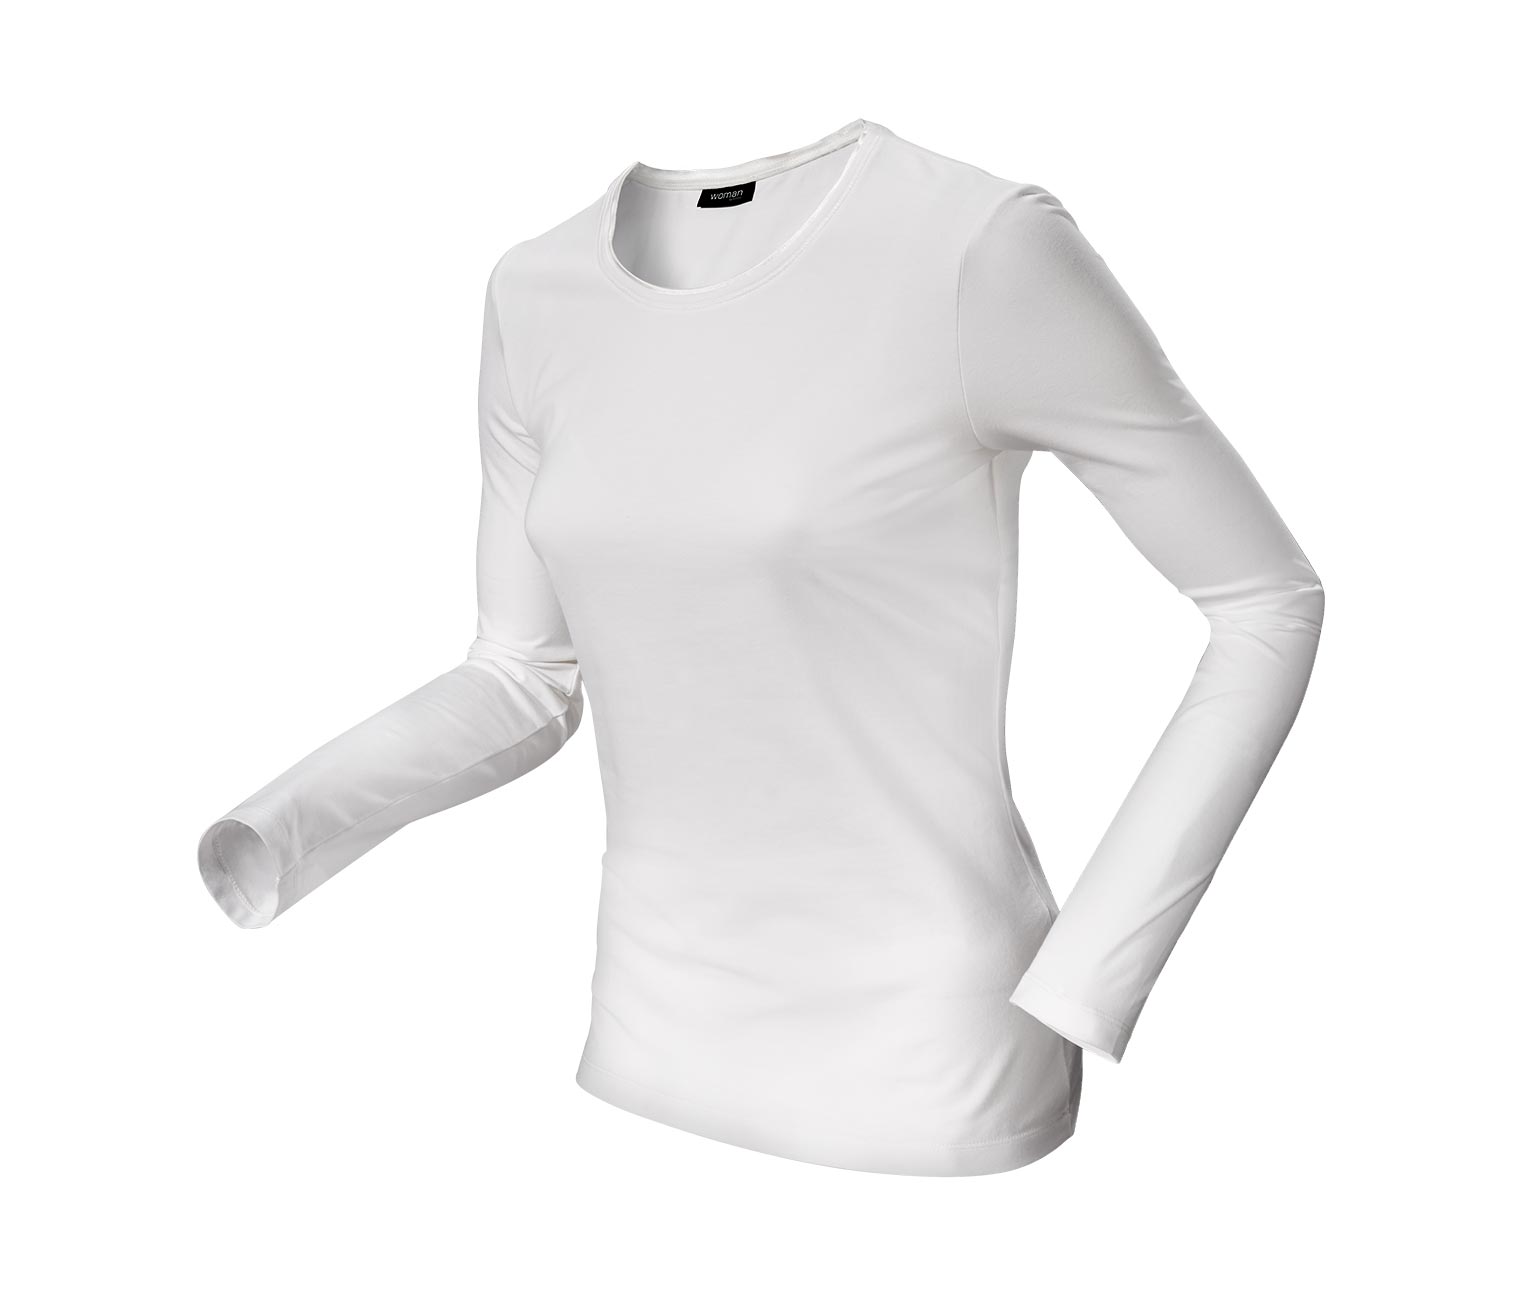 Langarmshirt mit Bio-Baumwolle, weiß online bestellen bei Tchibo 333354